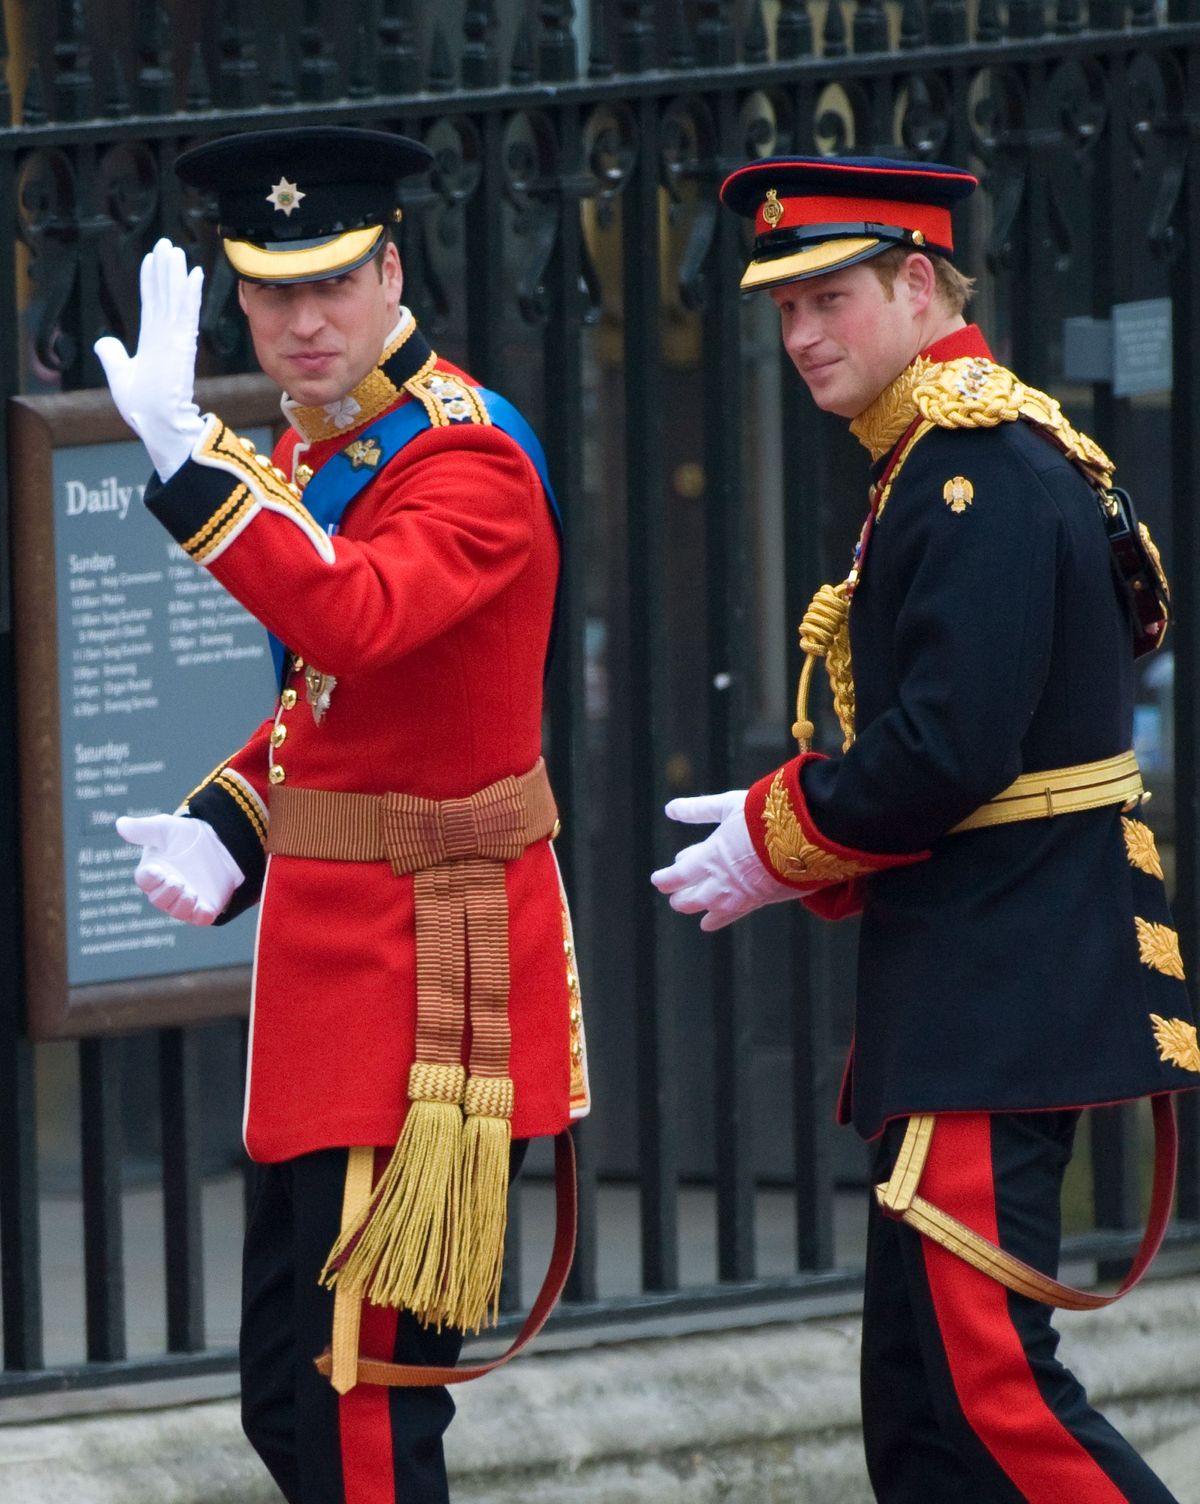 London, 29. aprill Prints William ja prints Harry saabuvad prints Williami kuninglikule pulmale Catherine Middletoni juurde Westminsteri kloostrisse 29. aprillil 2011 Londonis, Inglismaal, peapiiskop juhib teise Briti trooniga abielu. canterburyst ja sellel osaleb 1900 külalist, sealhulgas välisriikide kuninglikud pereliikmed ja riigipead, tuhanded häid soovijaid üle maailma on ka Londonisse kogunenud, et olla tunnistajaks samir husseinwireimage